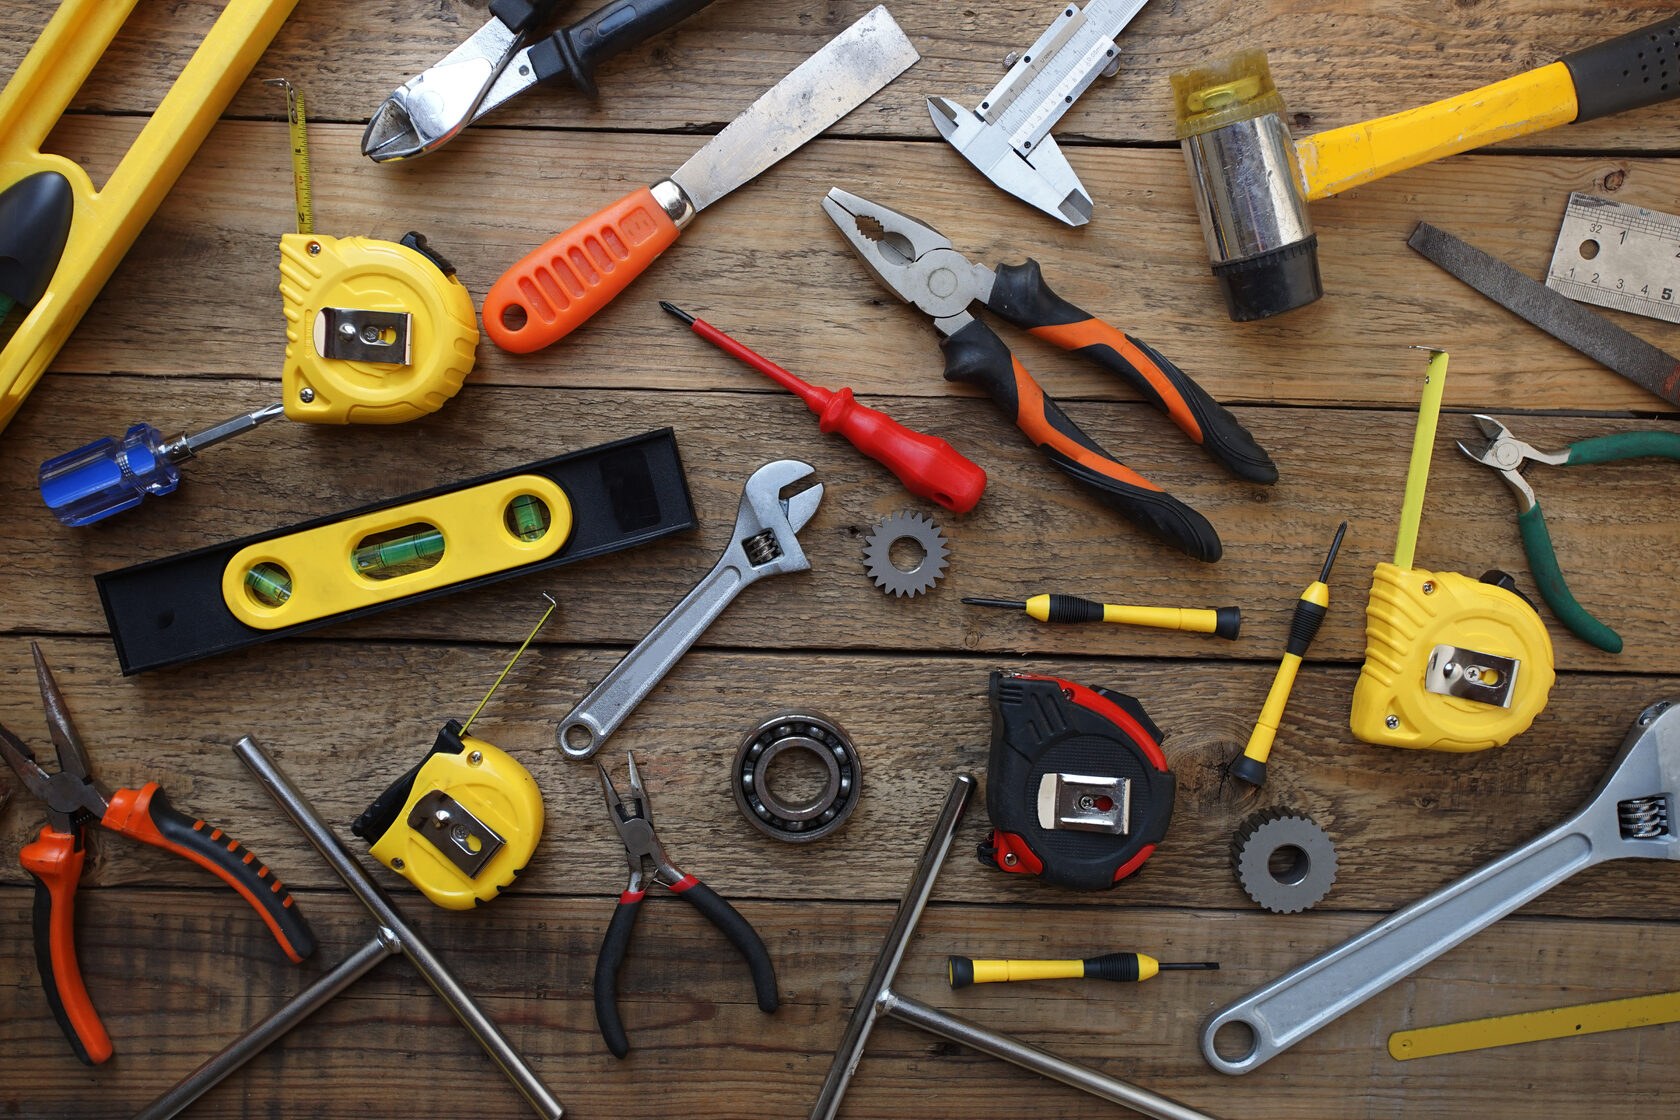 Full tools. Инструменты для строительства. Ручной инструмент. Инструменты для ремонта. Ручной инструмент для строительства.